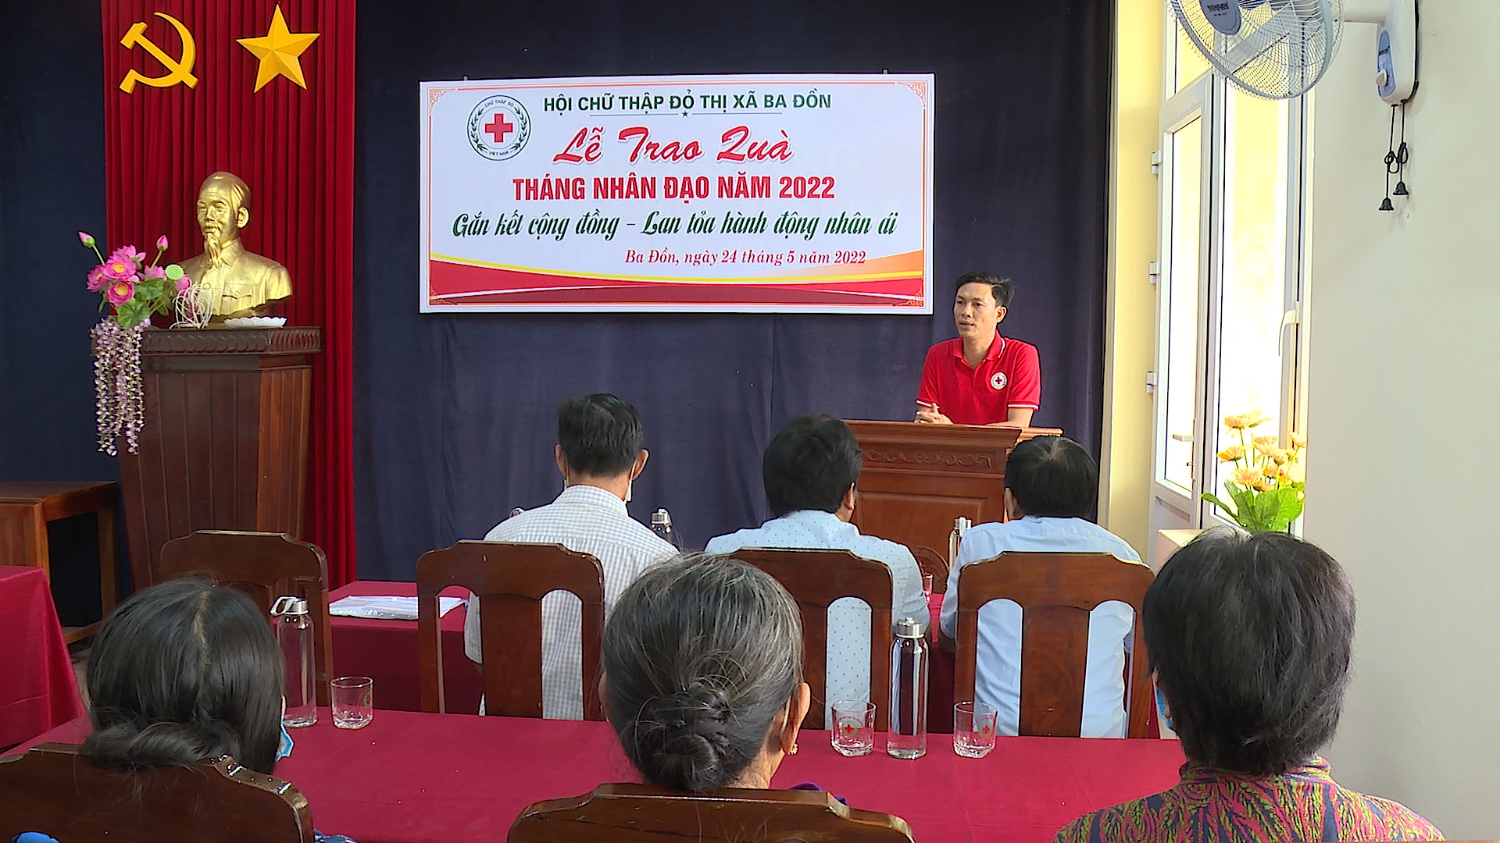 Hội chữ thập đỏ thị xã Ba Đồn trao quà tháng nhân đạo năm 2022